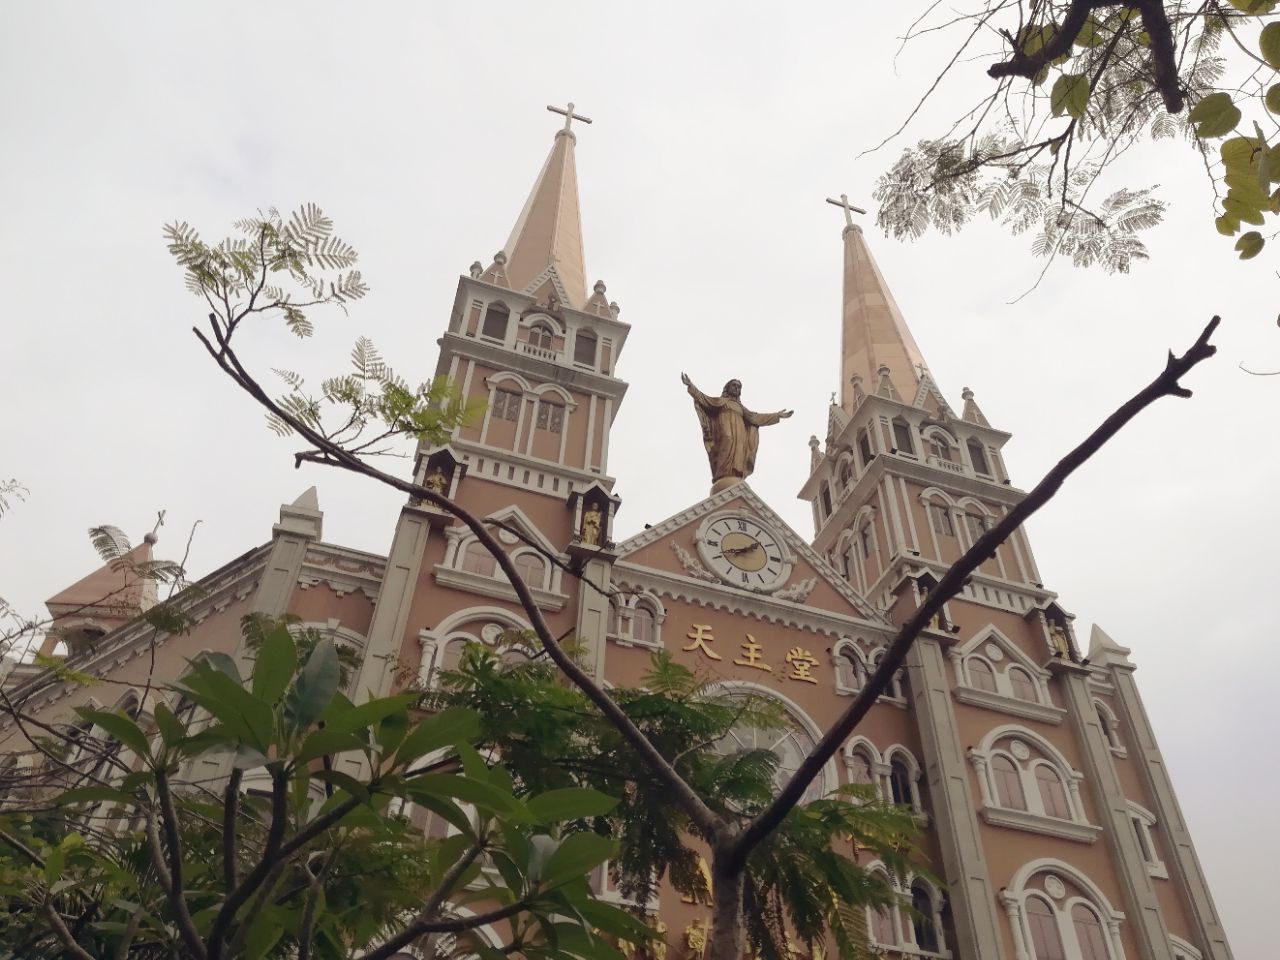 听说是深圳最漂亮的天主教教堂,所以就过来看了,果不其然,教堂非常